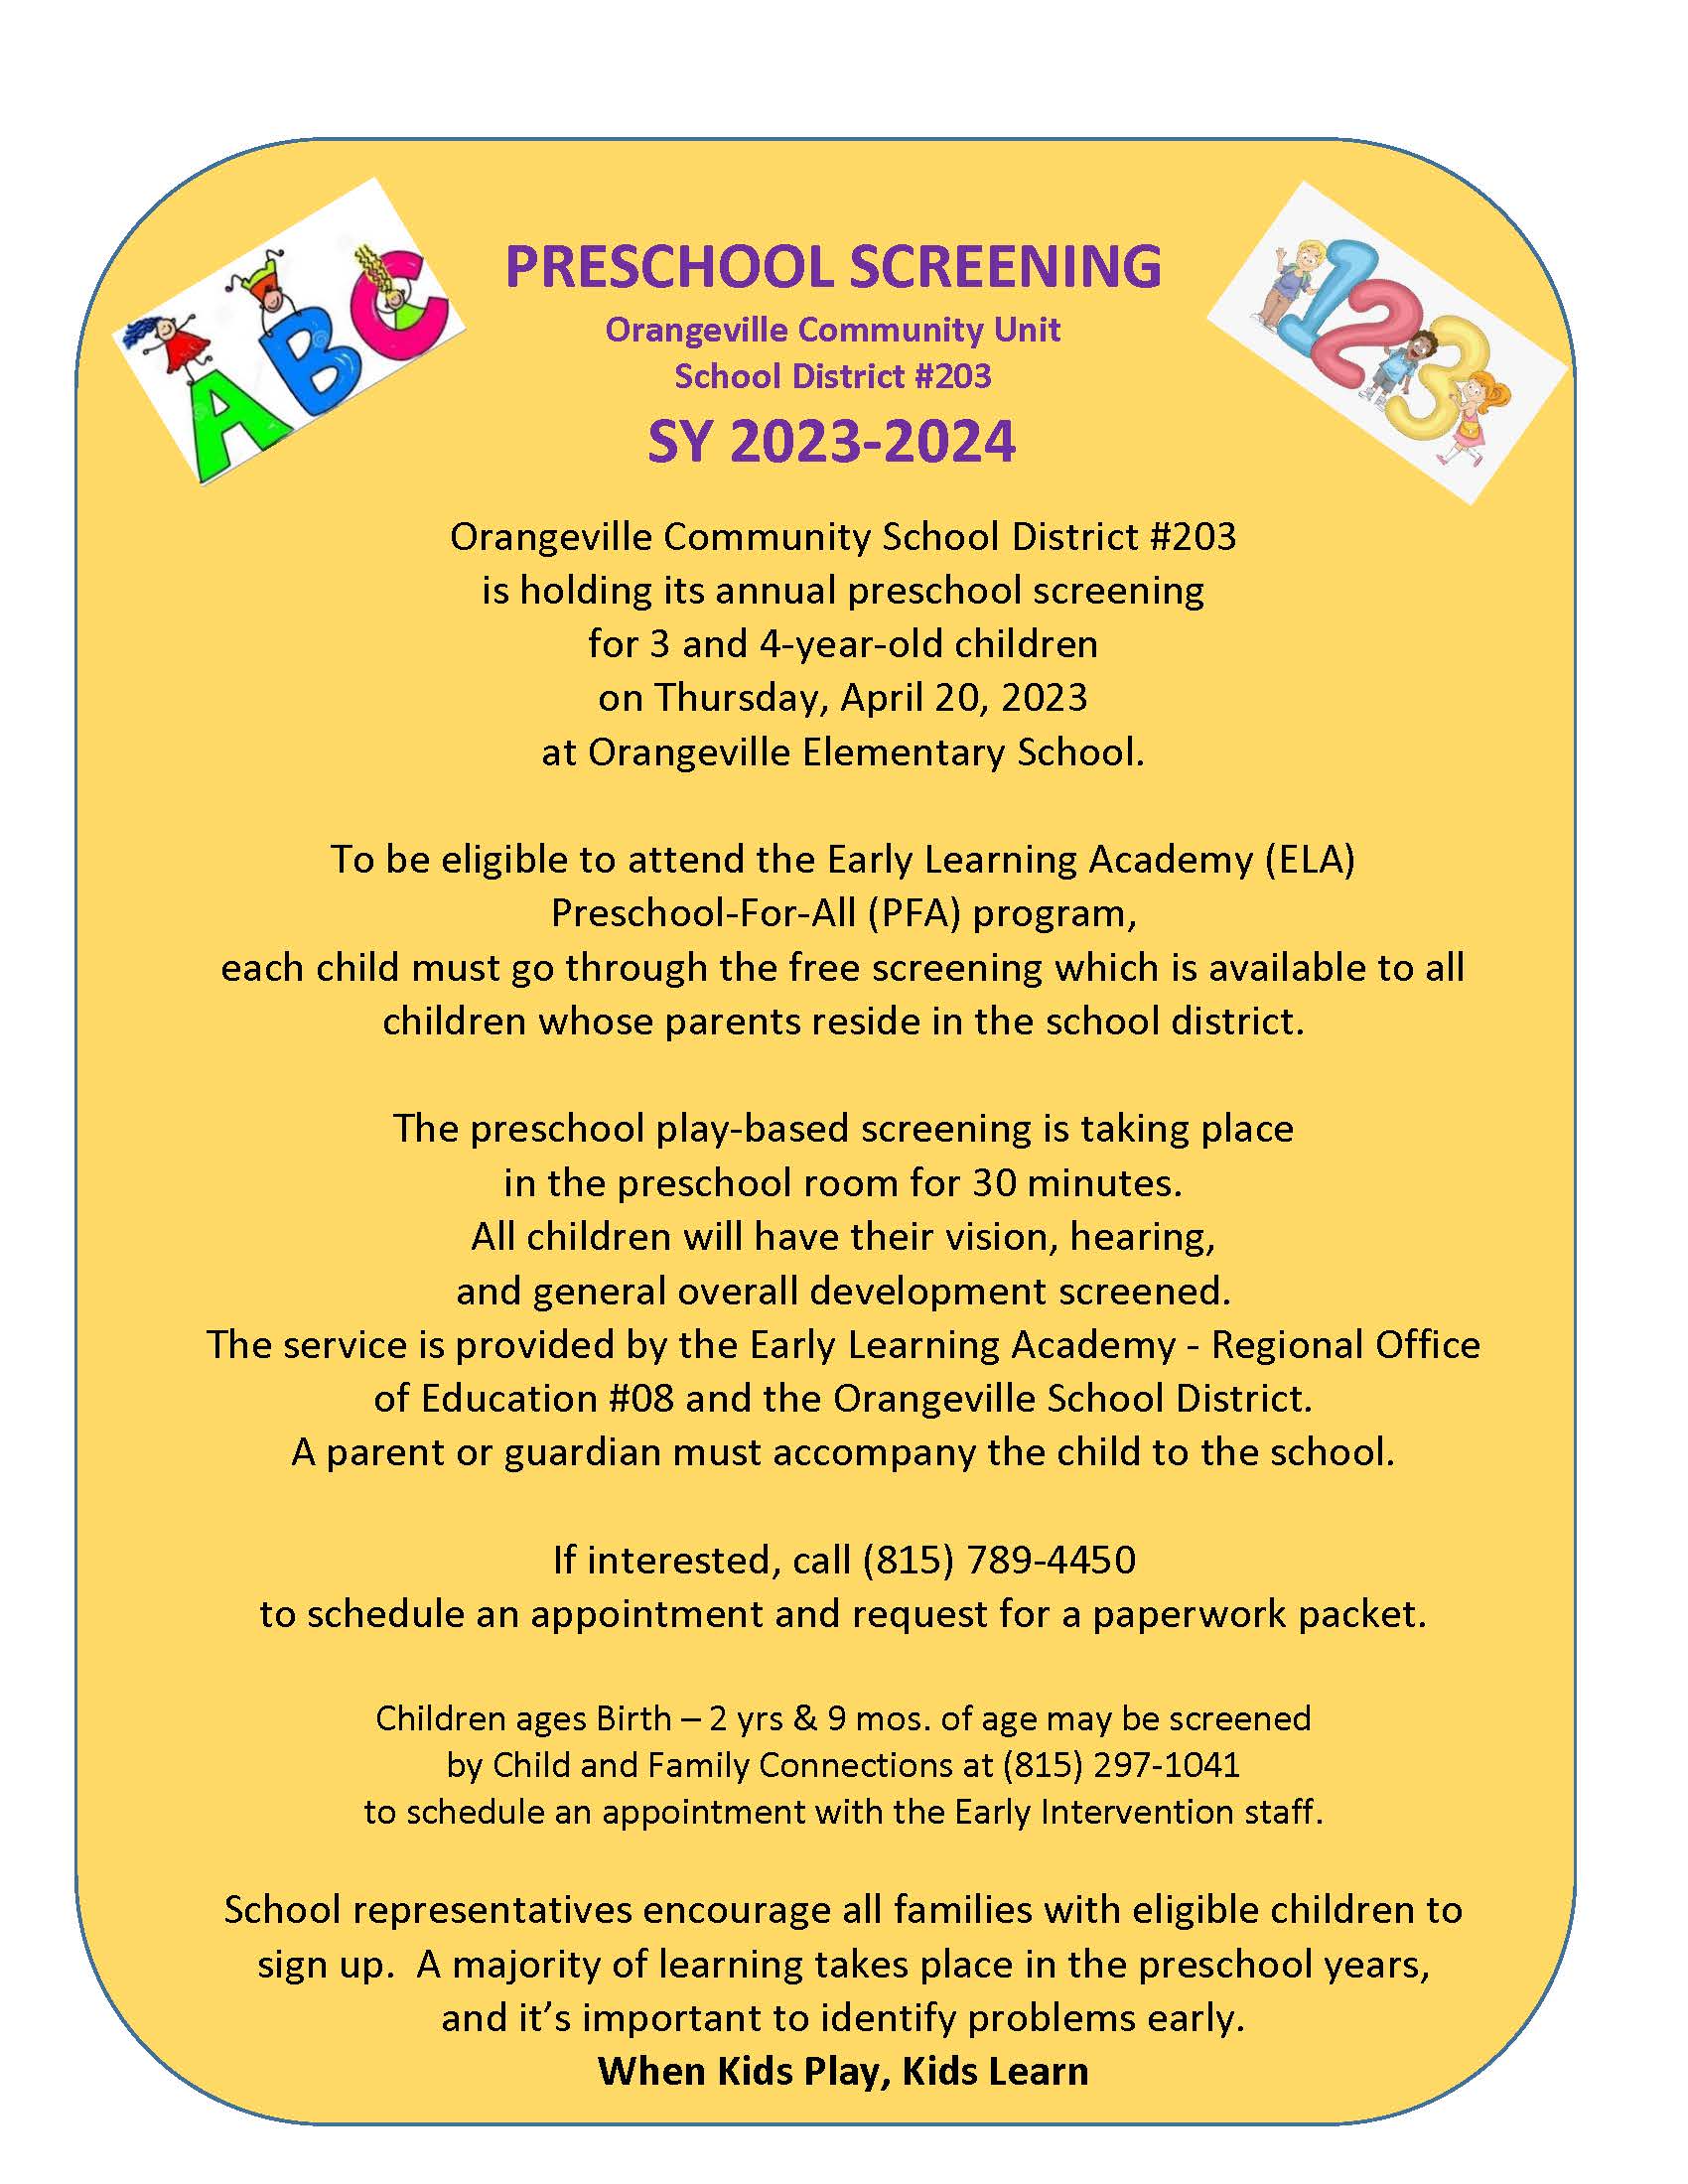 Preschool screening flyer